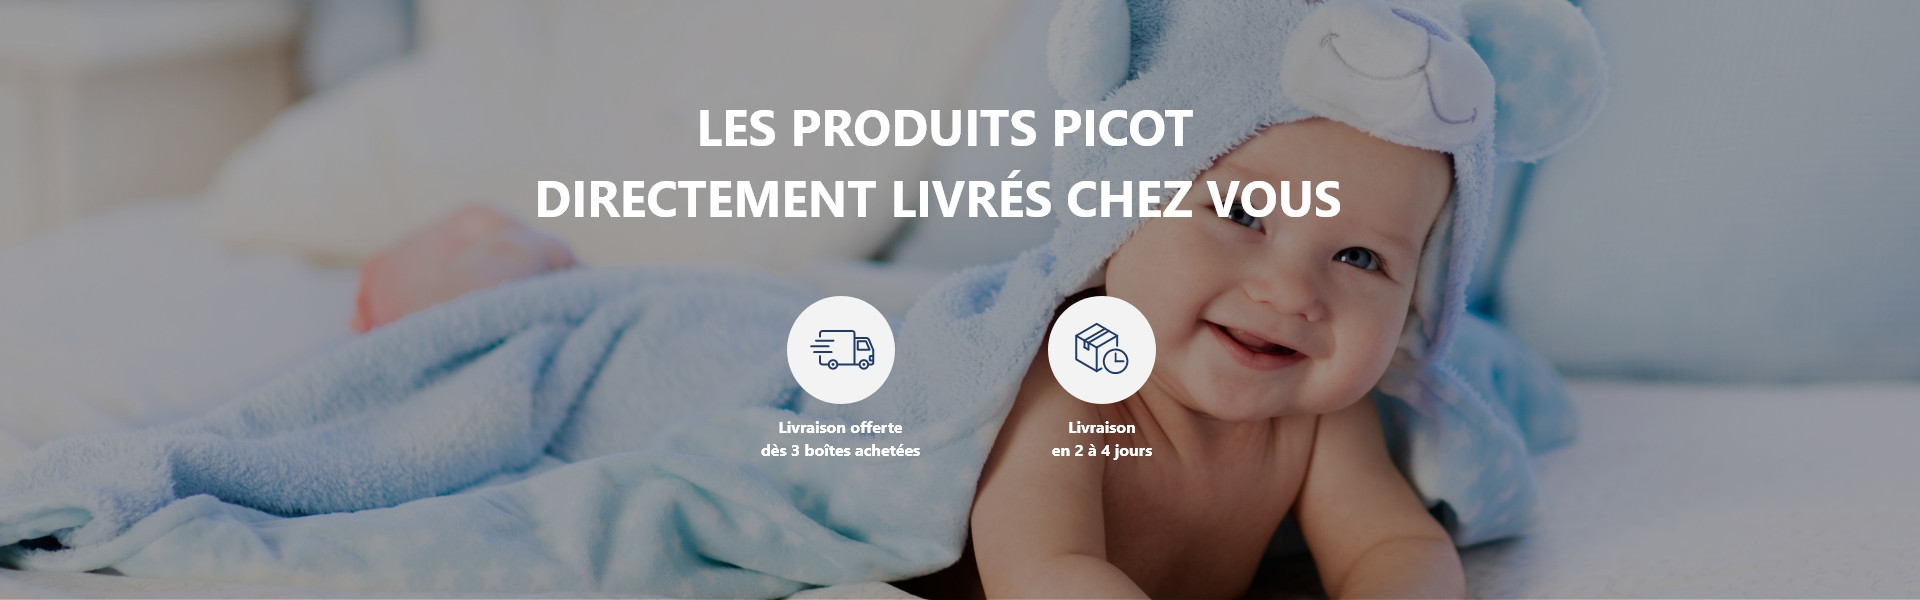 Les laboratoires Picot accompagnent les parents et les bébés depuis 1896 -  Laboratoires Picot